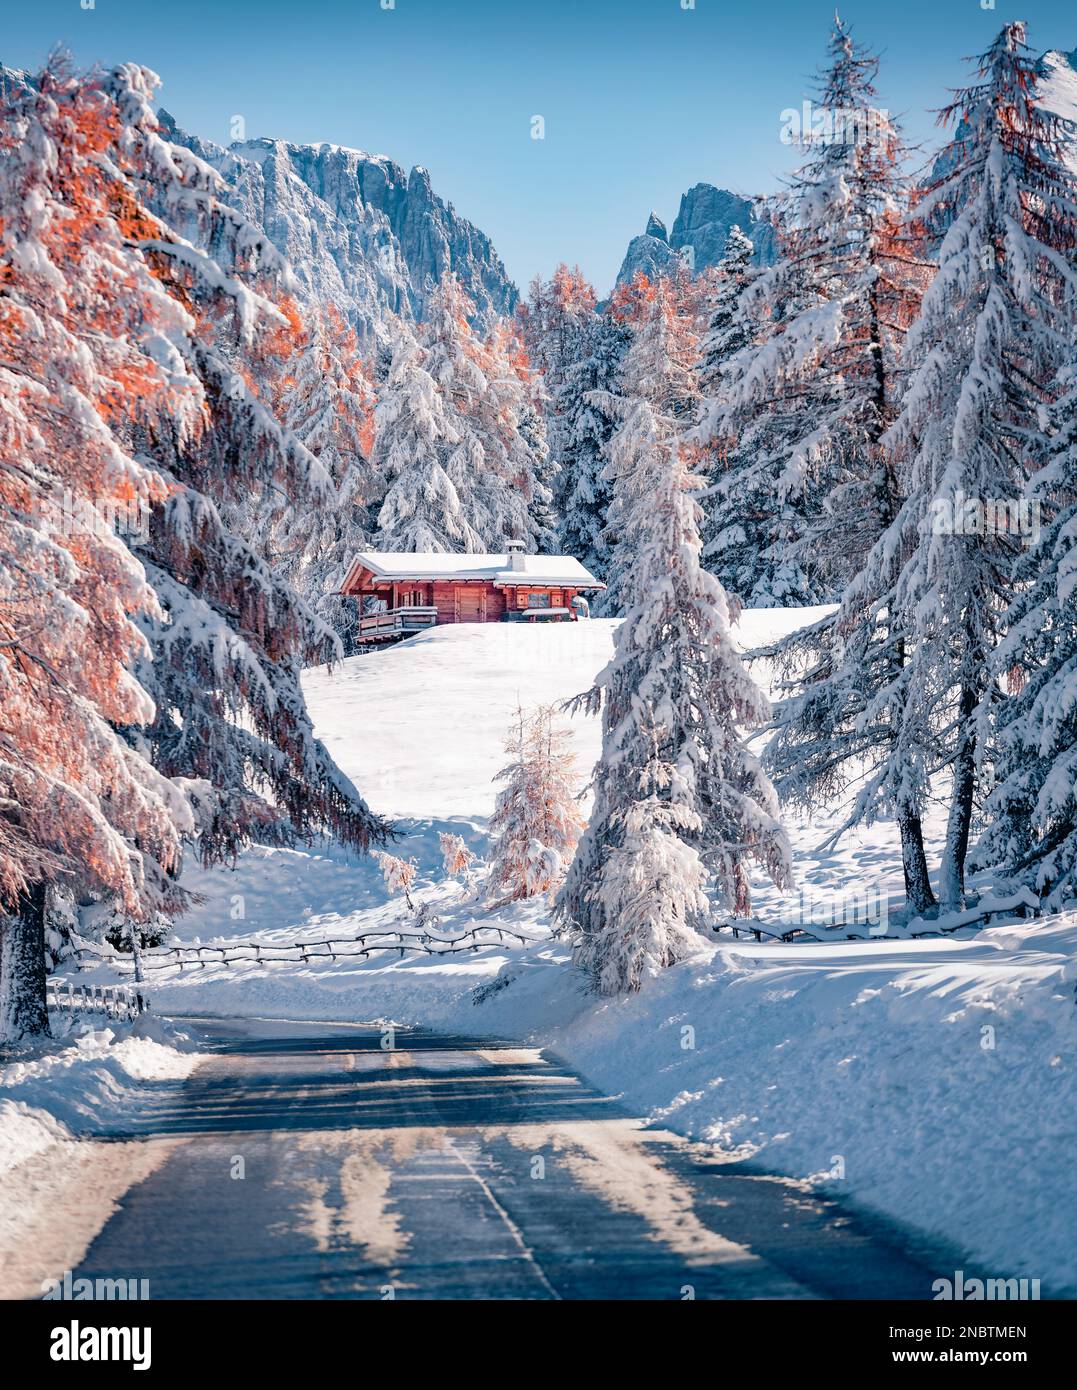 Leere Straße inmitten verschneiter Wälder. Erste schneebedeckte Lärche und Tannen im November. Wundervolle Herbstszene der Dolomiten, Italiens, Europas. Reisen c Stockfoto